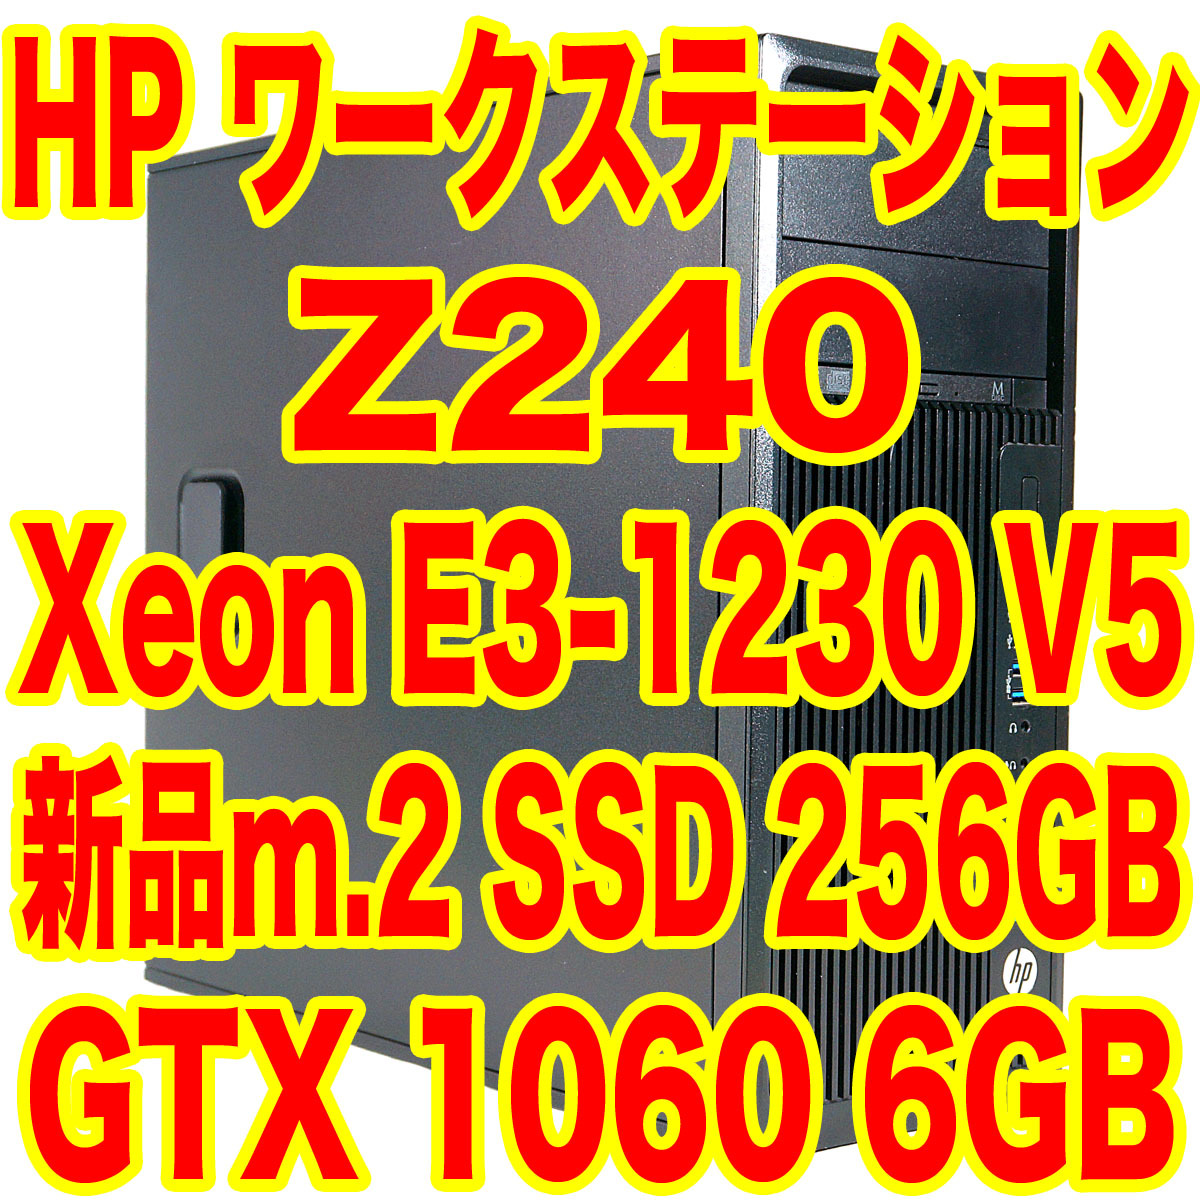 インテル Xeon E3-1230 v5 BOX オークション比較 - 価格.com